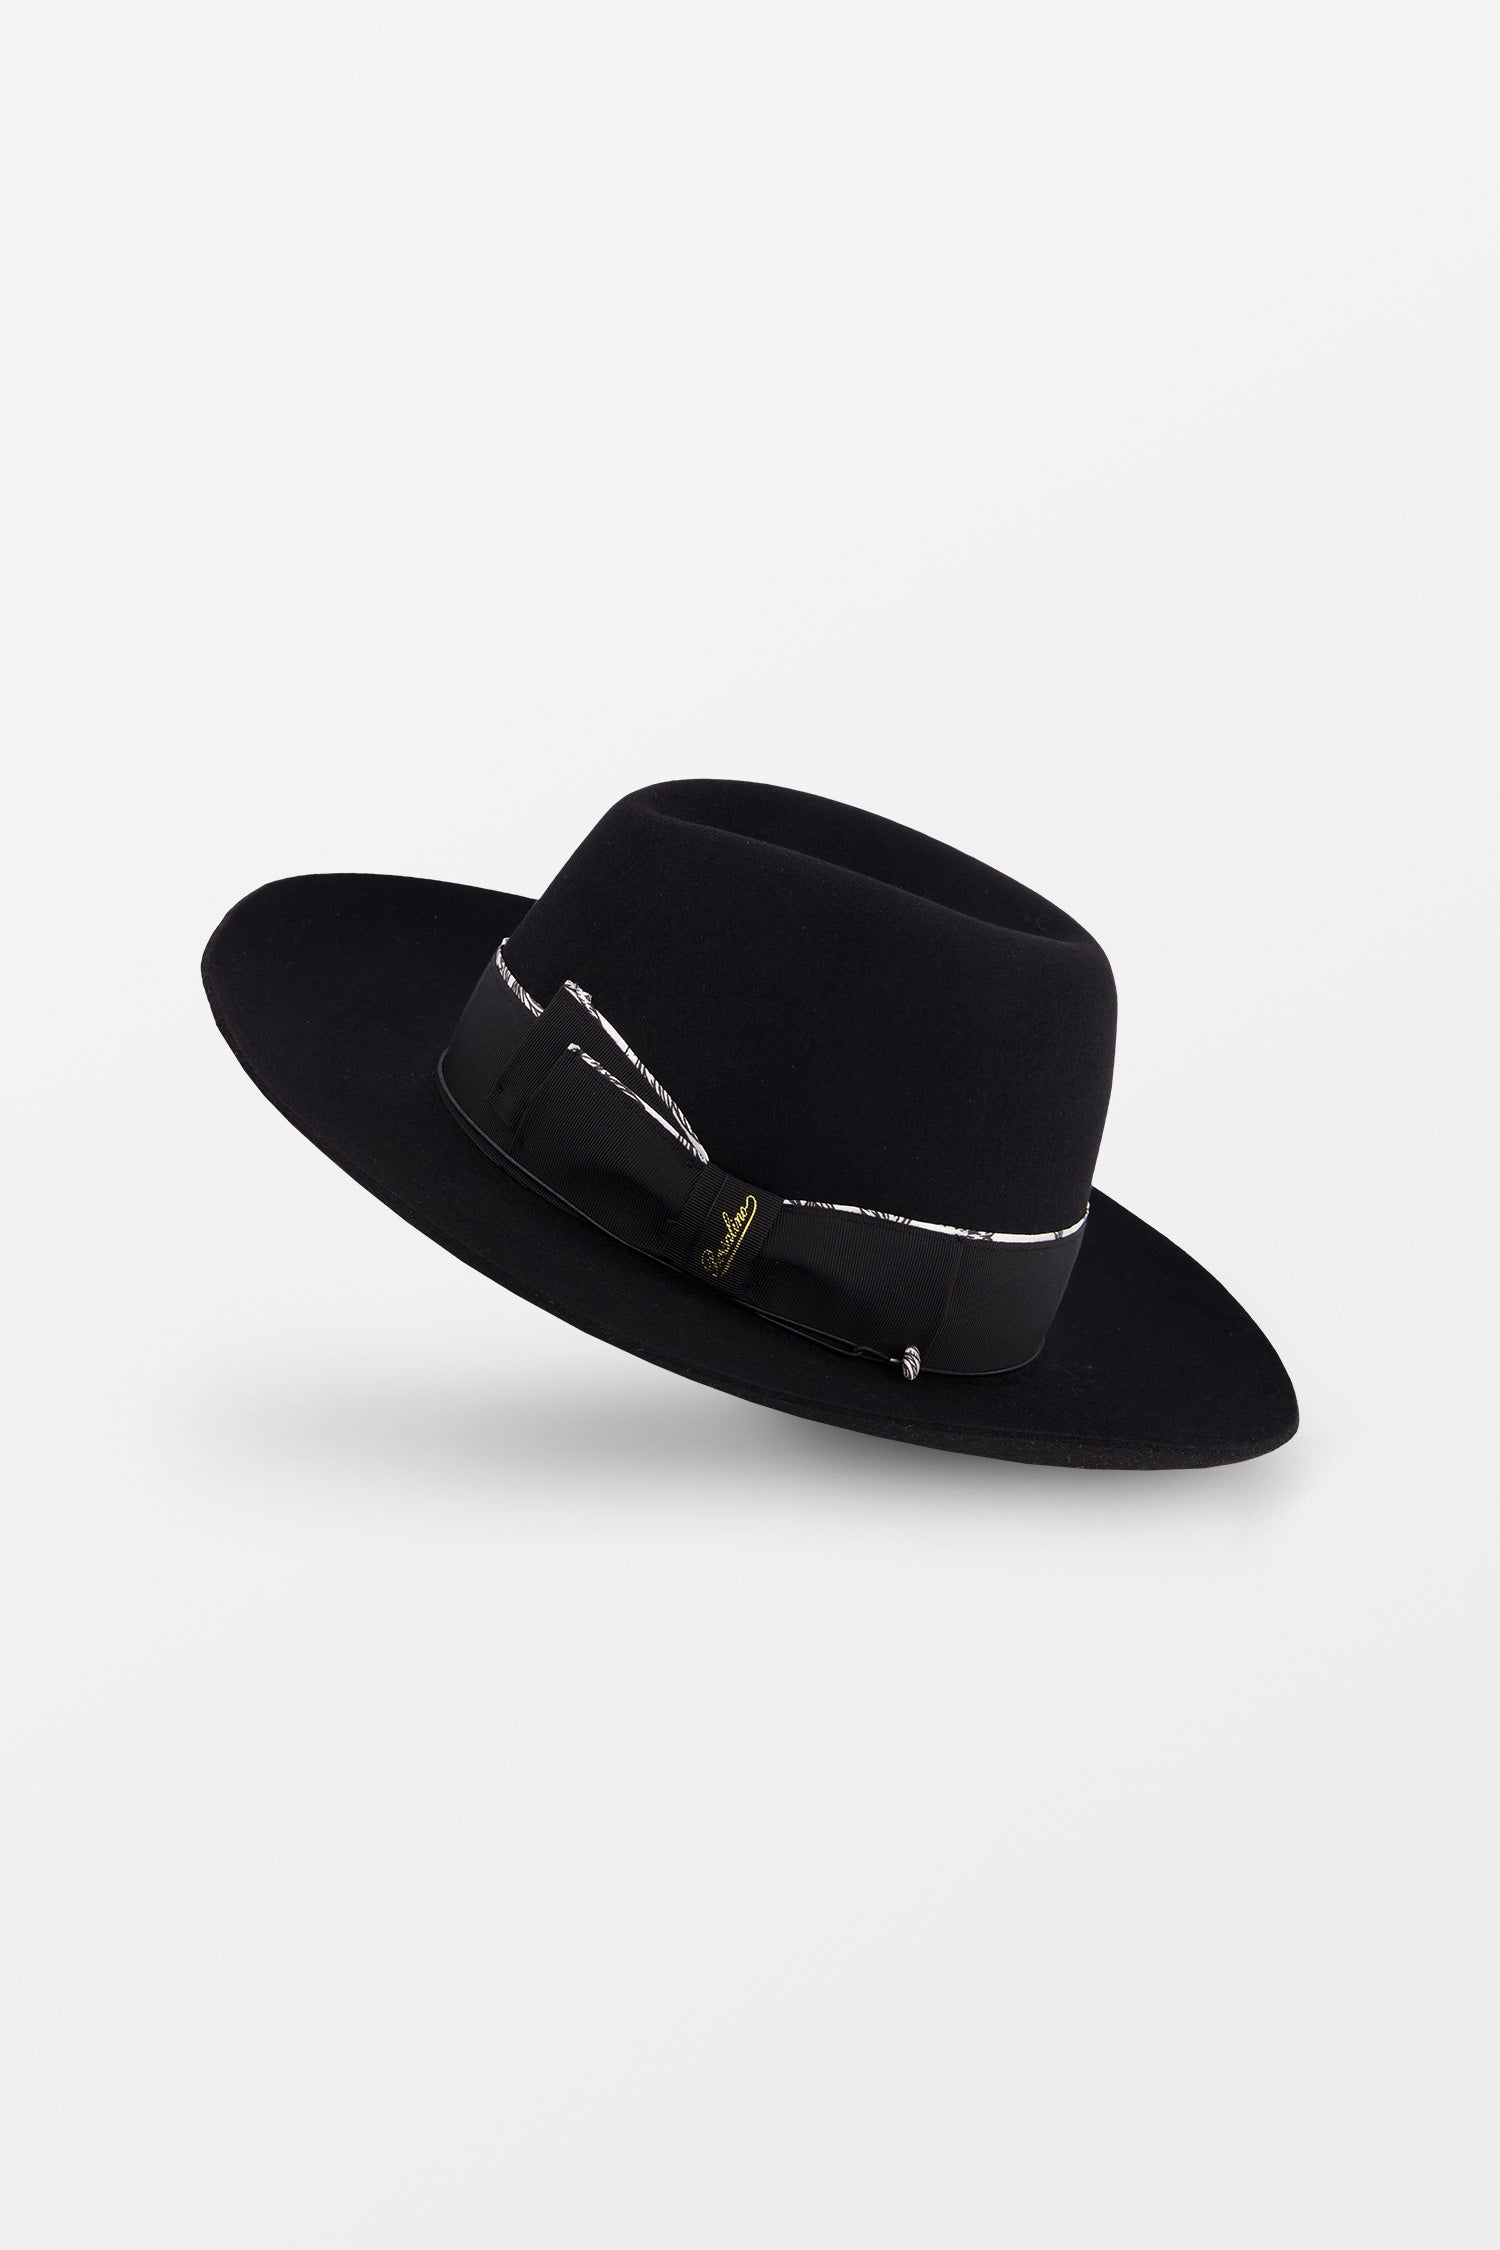 Shop Branded Luxury Men's Hats From Top Designers